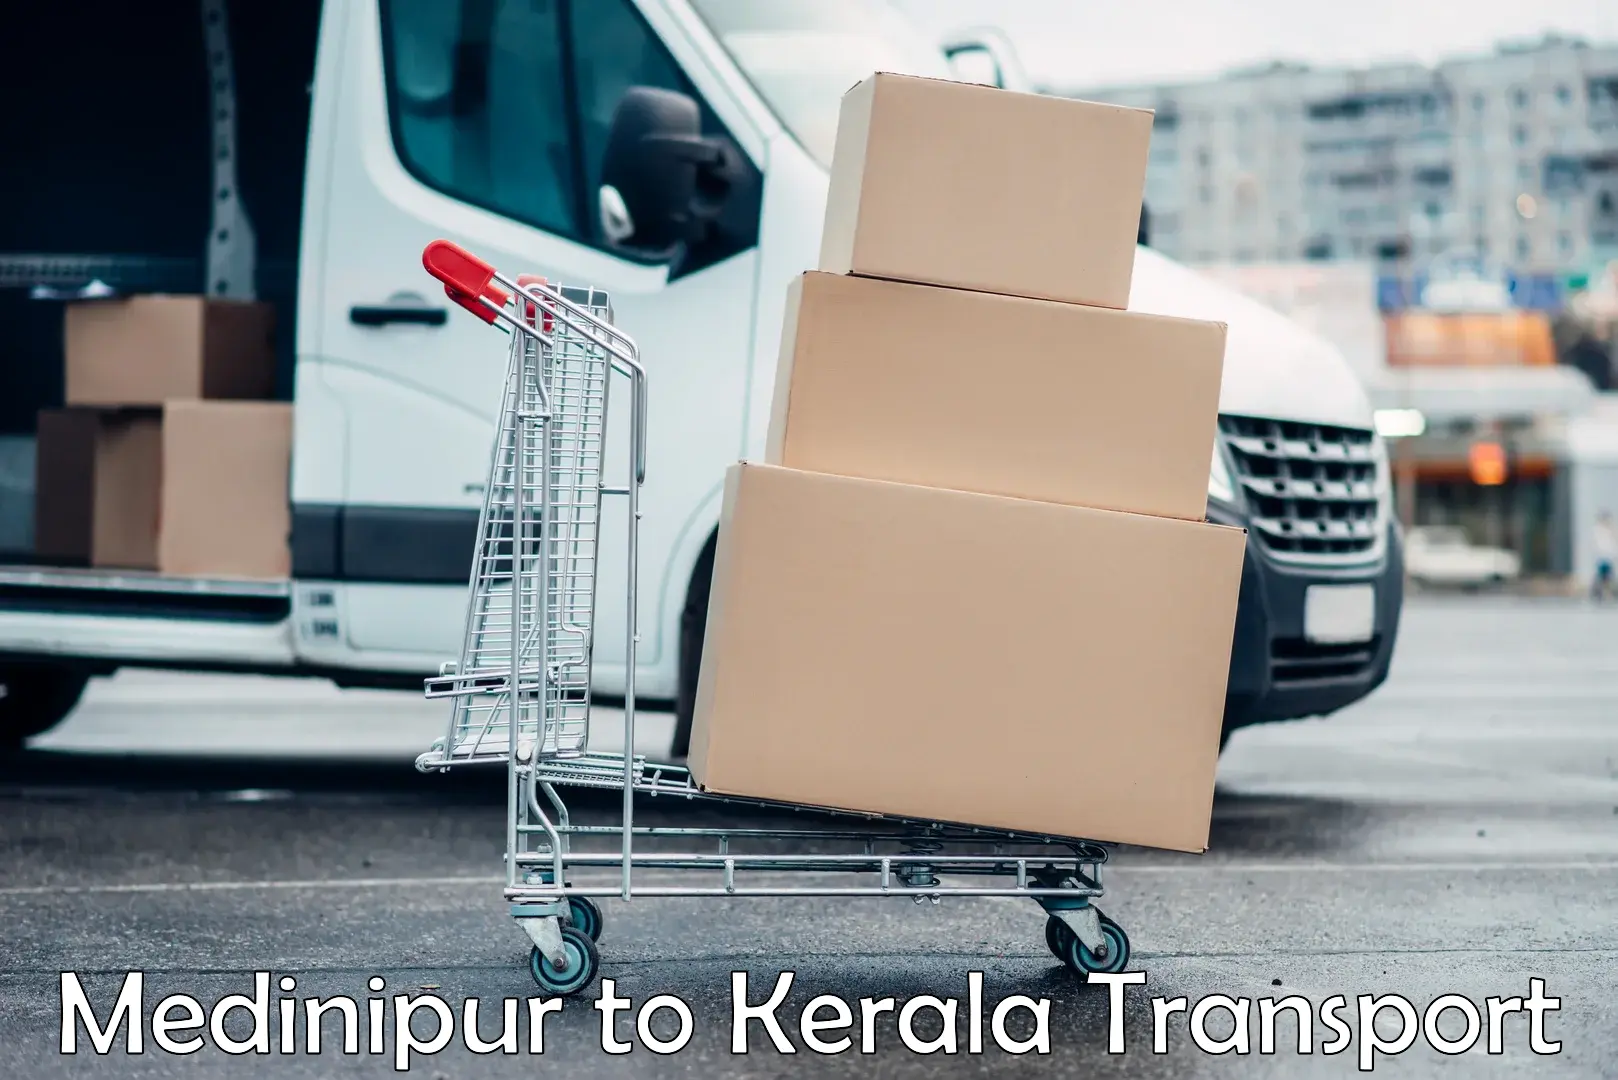 Nearest transport service Medinipur to Thrissur